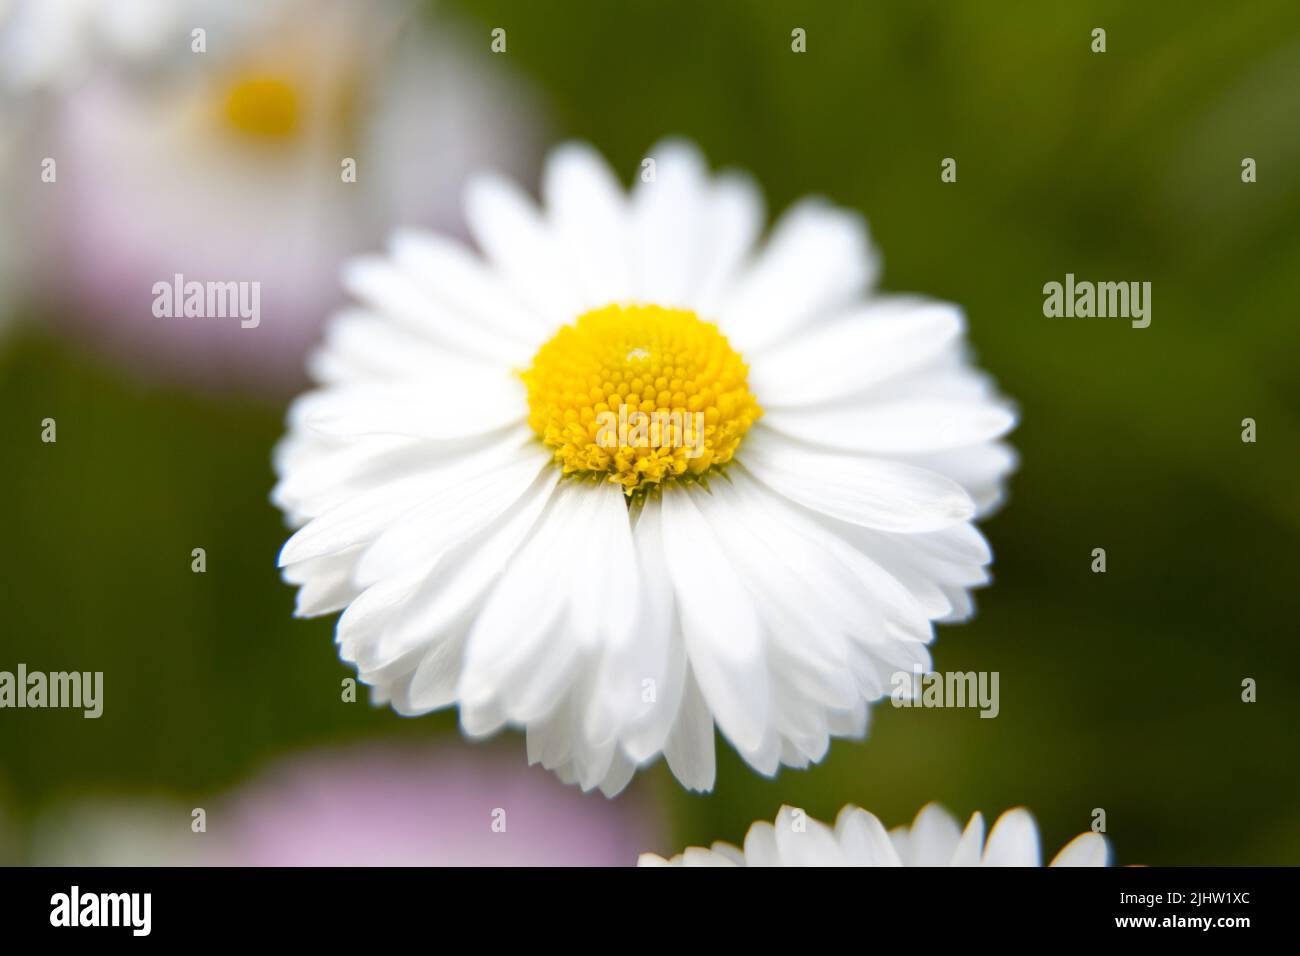 Macro photo white daisy. Stock photo white daisy flower. garden daisy Stock Photo